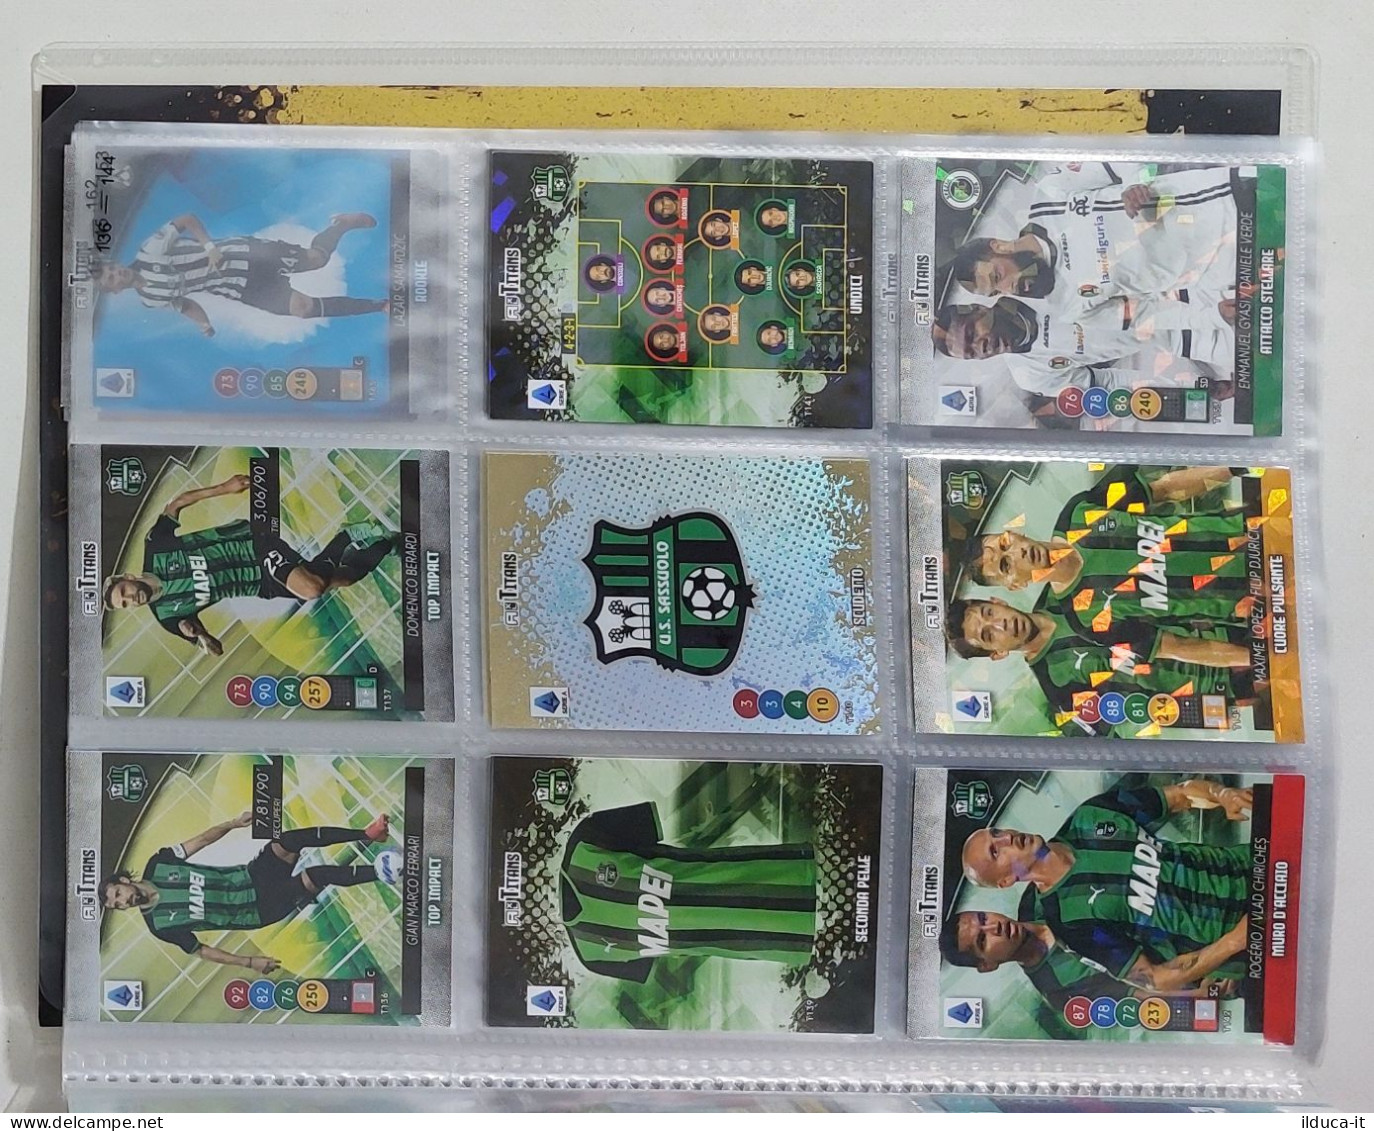 69725 Album Cards Panini - Calciatori Adrenalyn Titans 2022 - Fig. 106/212 - Italienische Ausgabe